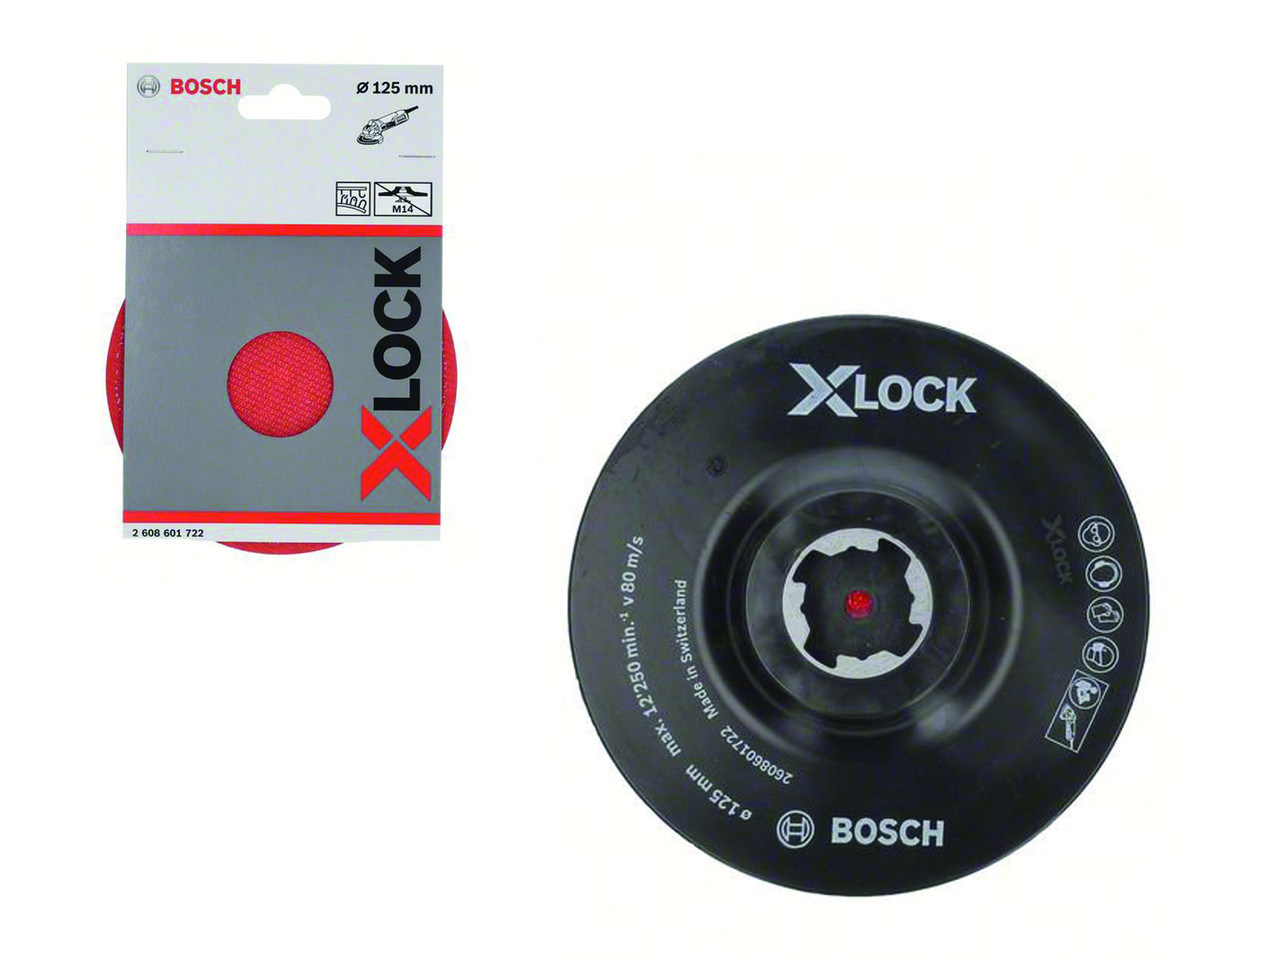 Опорная тарелка X-LOCK 125 мм с липучкой 2608601722